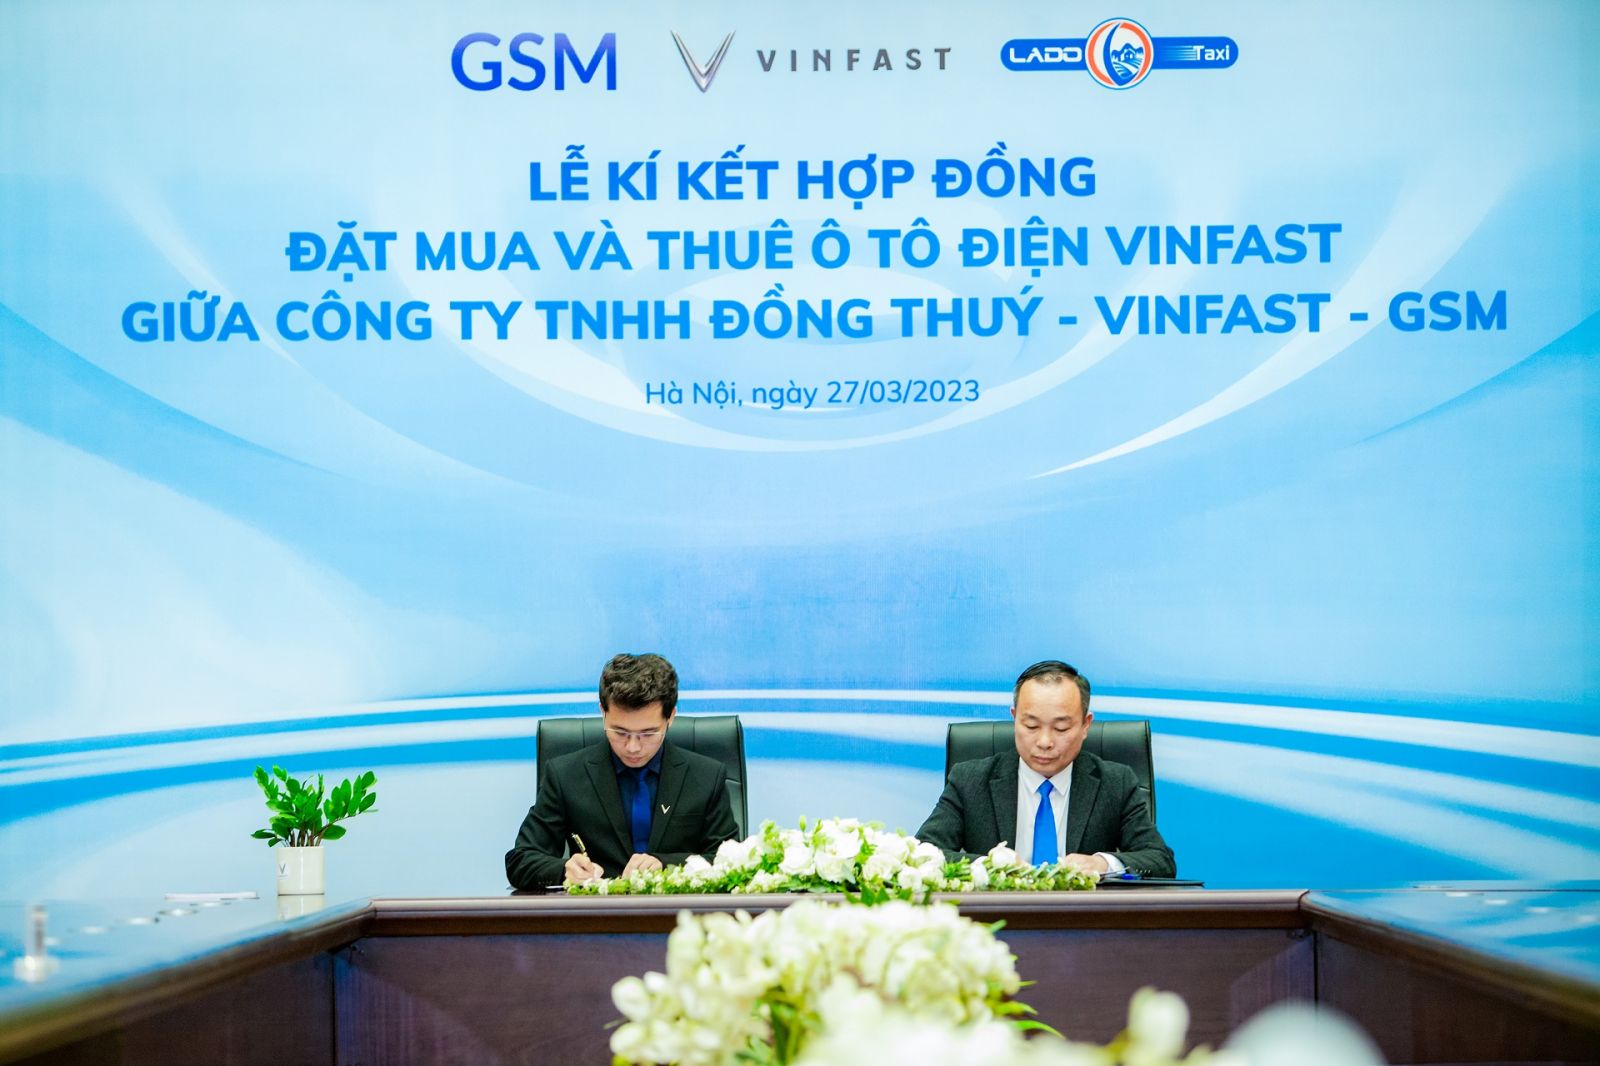 Ông Nguyễn Văn Thanh - Tổng giám đốc Công ty GSM kiêm Phó Tổng giám đốc VinFast Việt Nam và ông Nguyễn Ngọc Đồng - Tổng giám đốc Công ty TNHH Đồng Thuý ký kết hợp đồng mua và thuê xe ô tô điện VinFast.